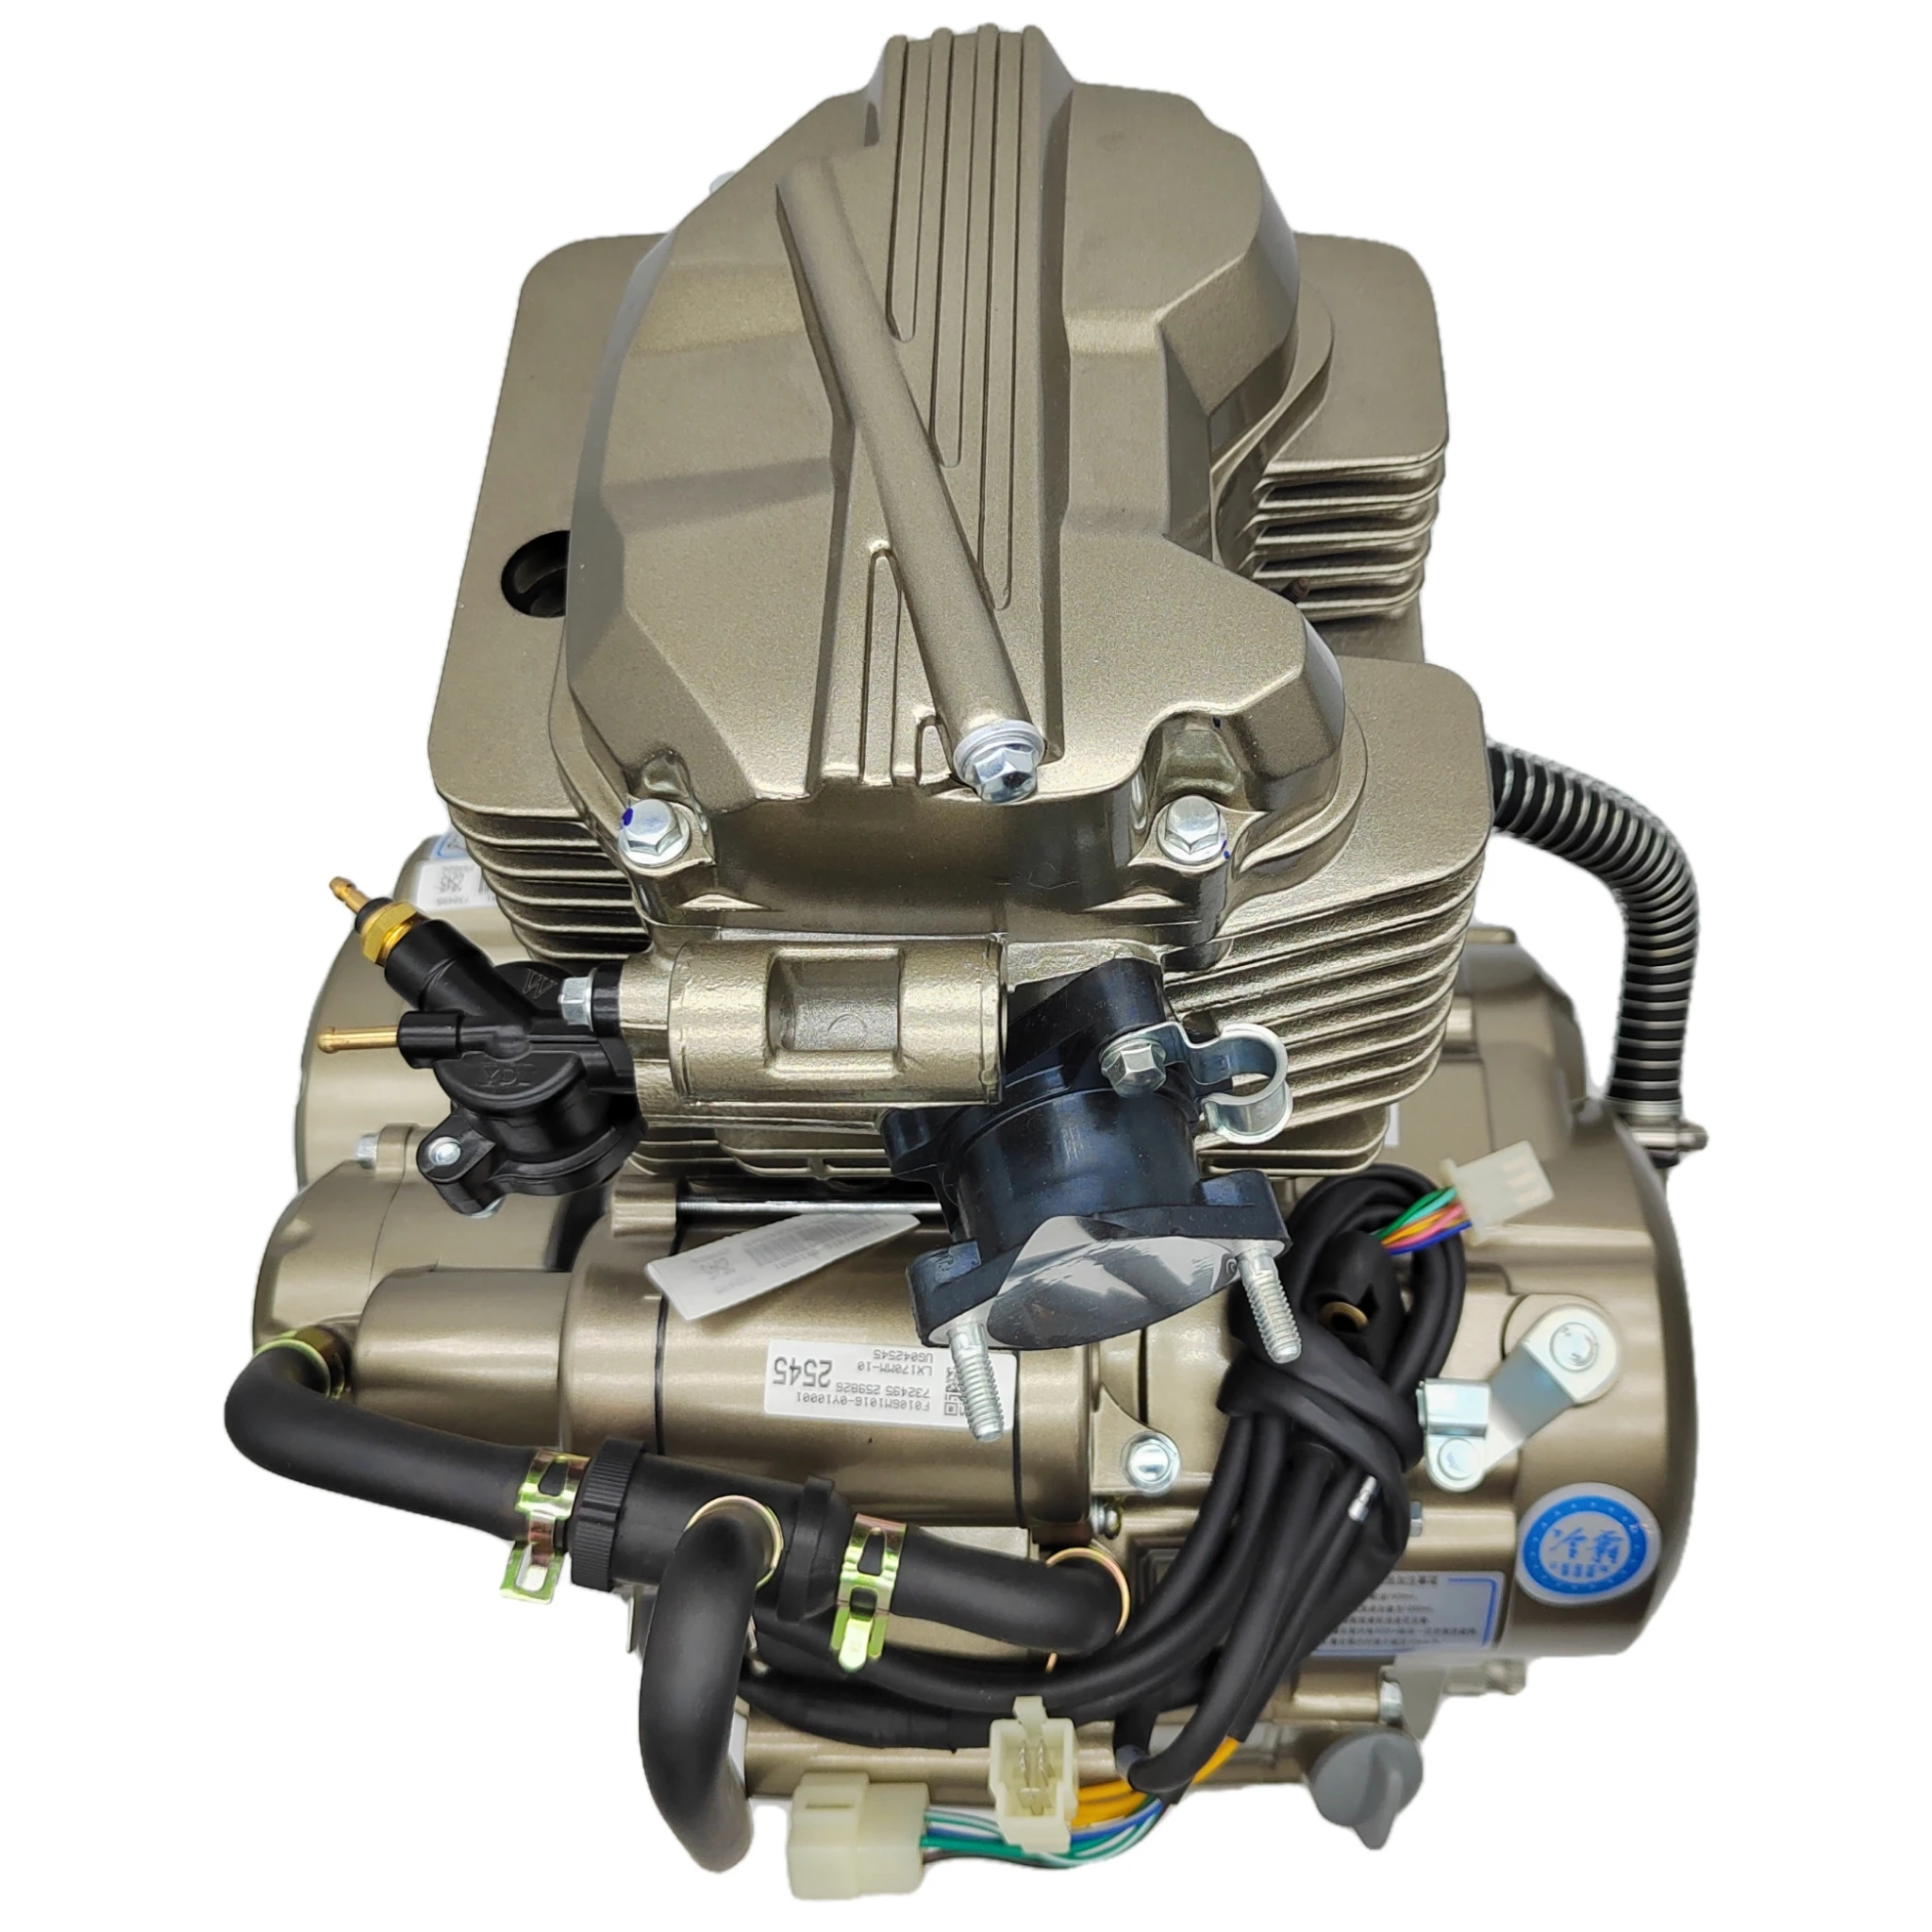 Производители продают Loncin Thunderbolt 300cc двигатель с водяным охлаждением двигатель для мотоцикла 300cc двигатель подходит для сборки трехколесного двигателя